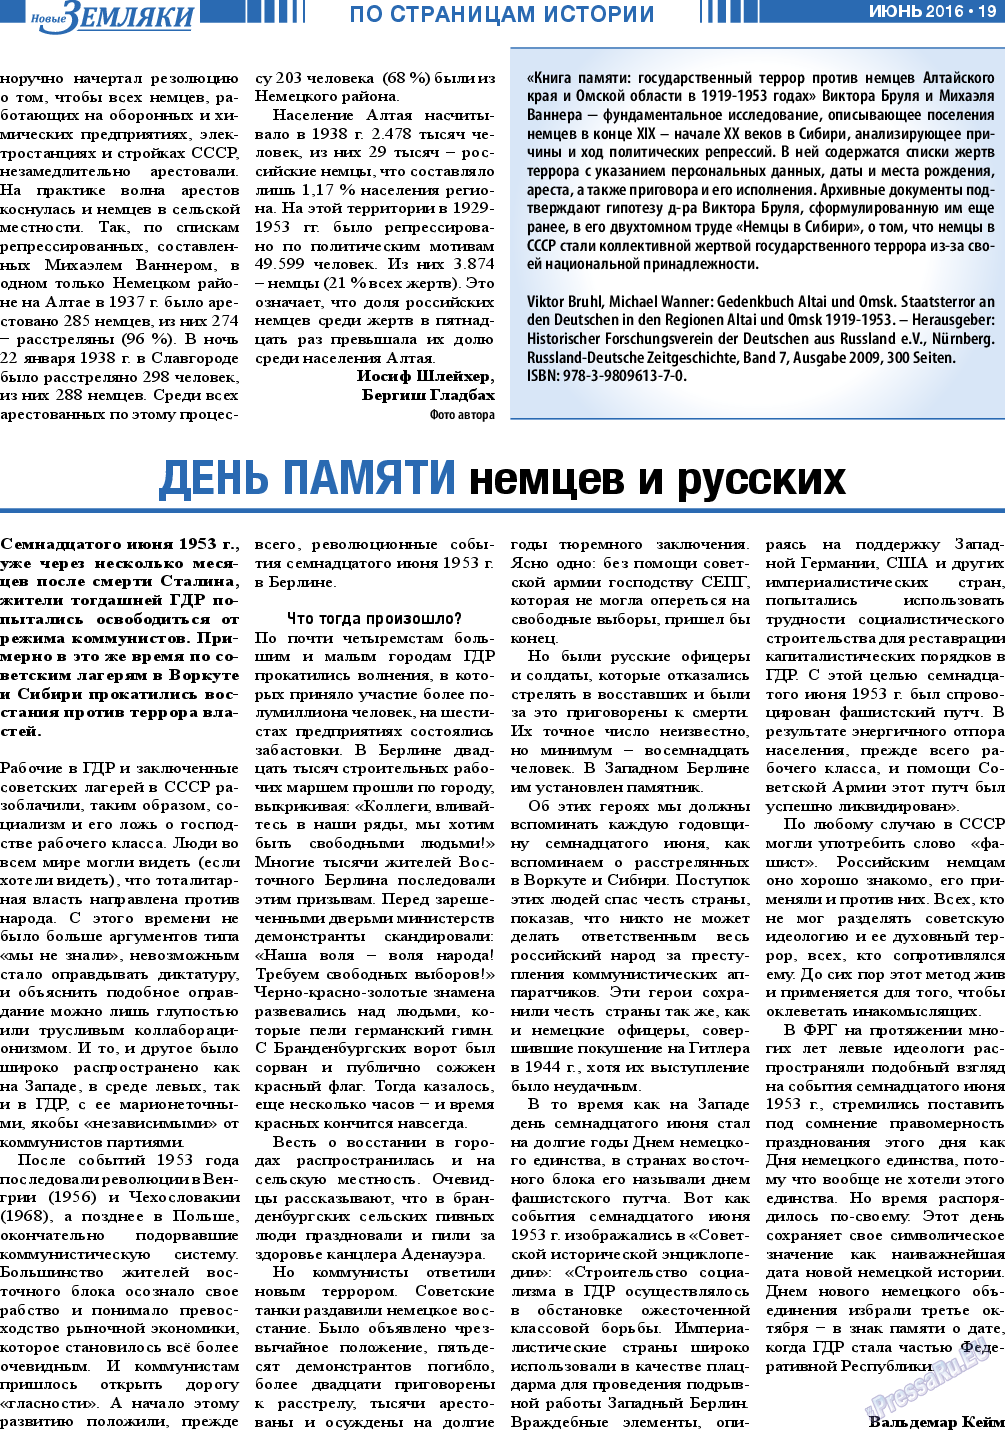 Новые Земляки, газета. 2016 №6 стр.19